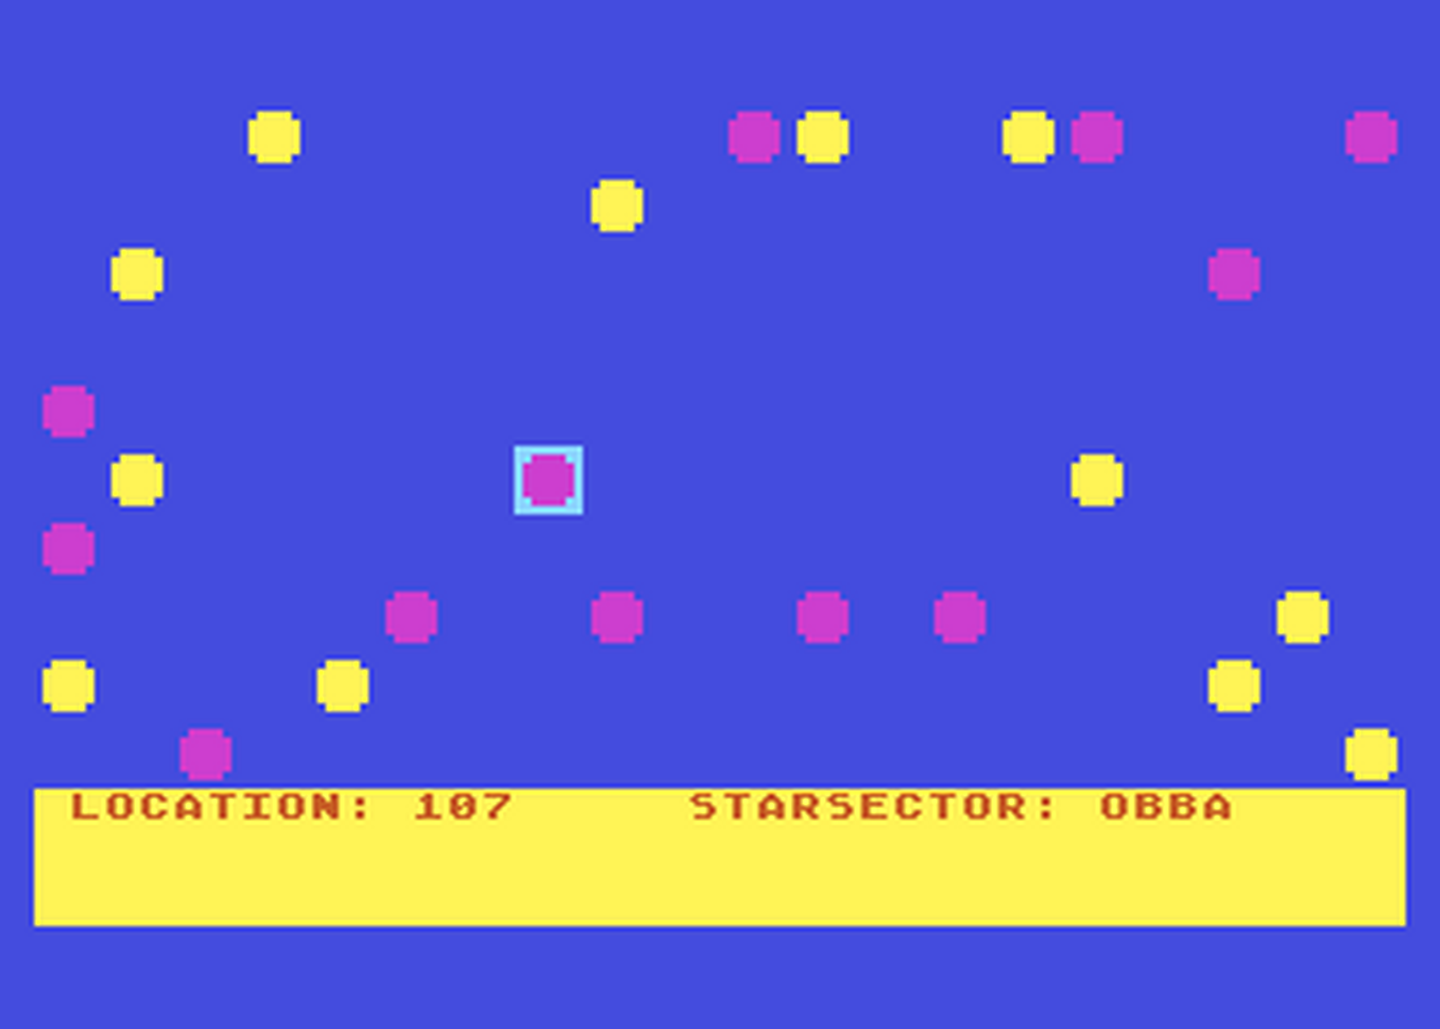 Atari GameBase Spacer! StarGames_/_Shadow_Software 1989